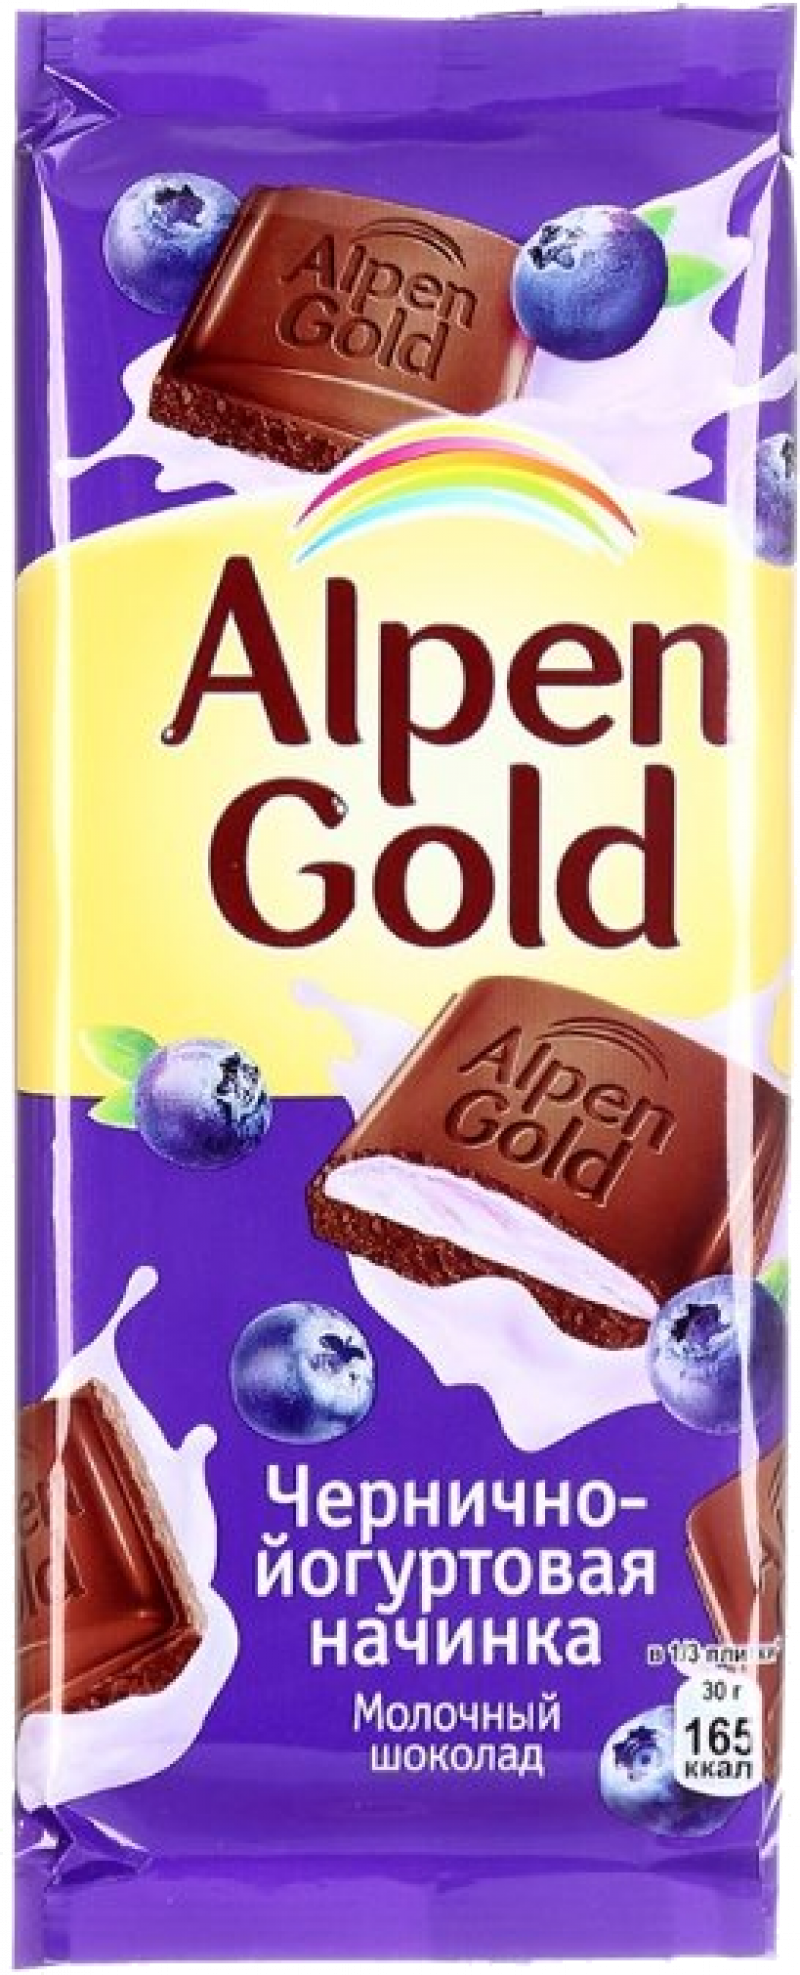 Шоколад ТМ Alpen Gold молочный с чернично-йогуртовой начинкой 90г